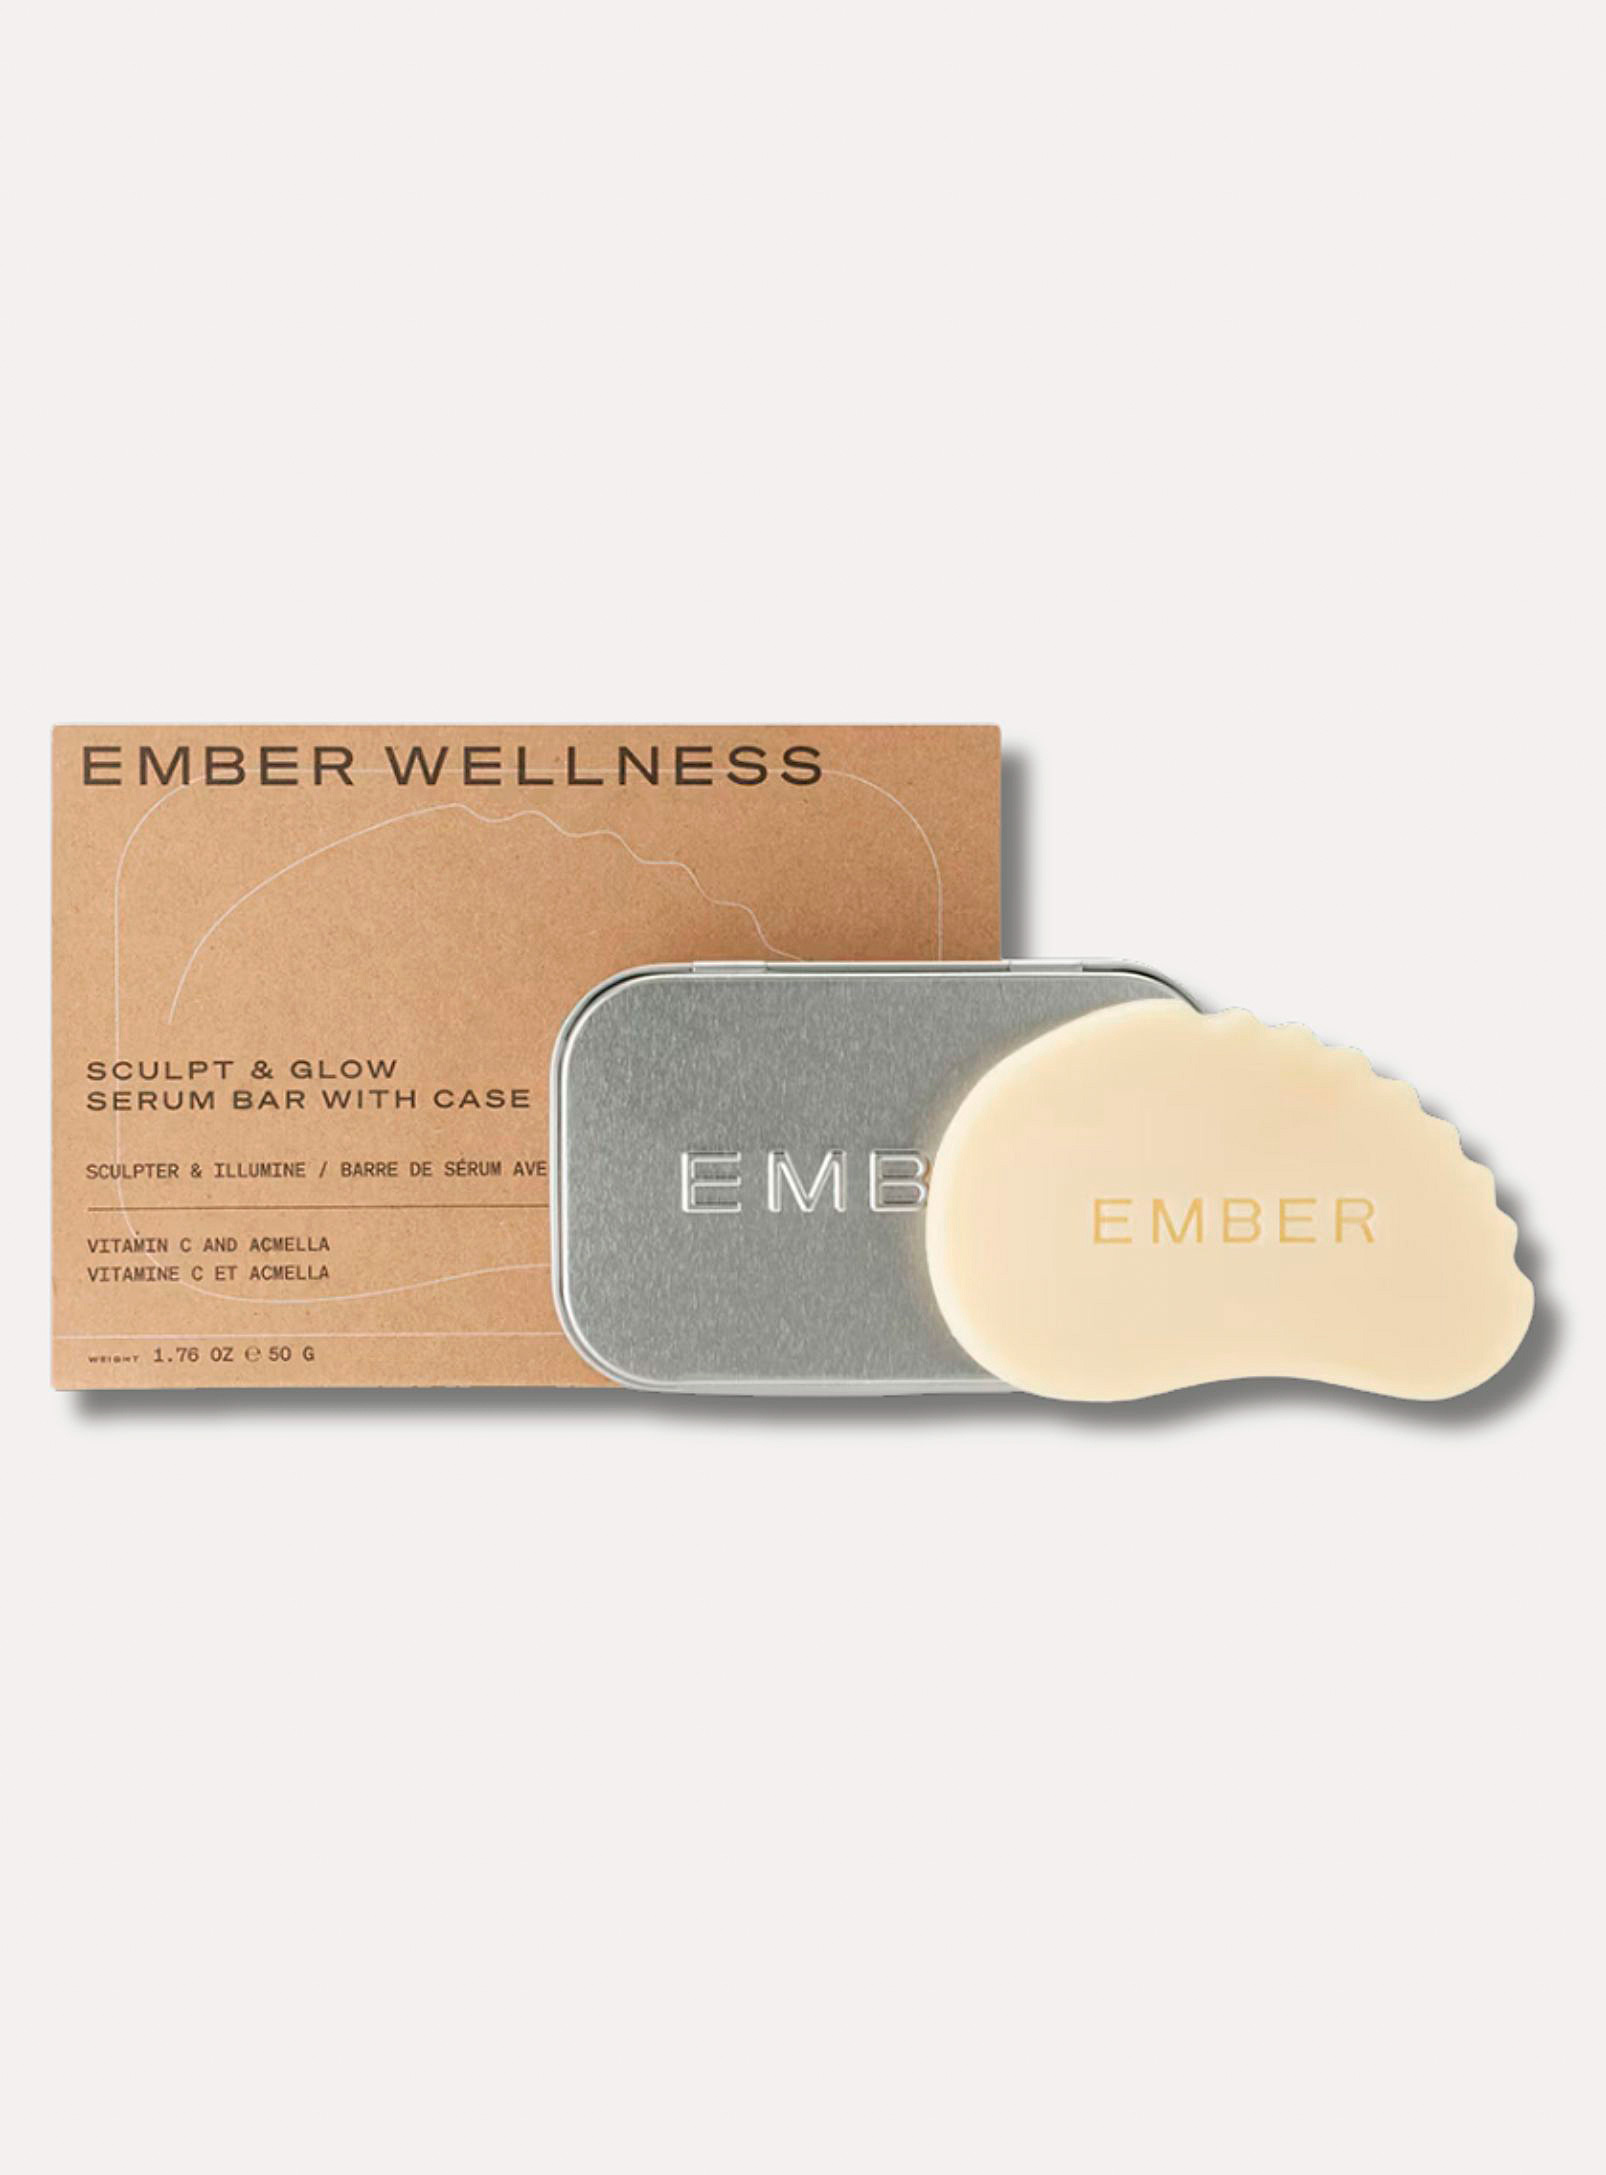 Ember Wellness - Moisturizing and sculpting facial serum bar